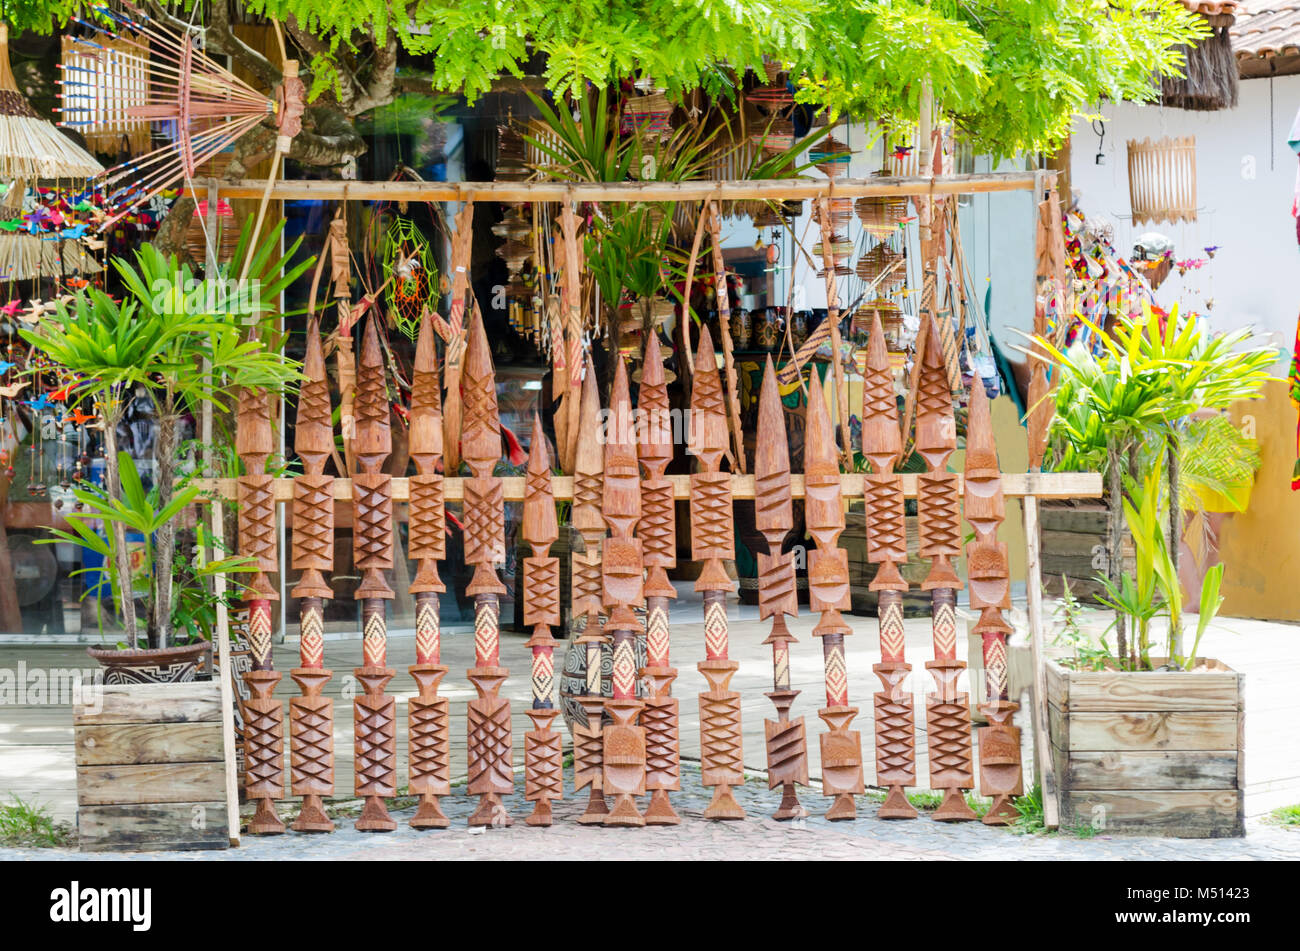 Indigeni brasiliani armi di decorazione essendo venduto a una fiera di artigianato in Bahia in Brasile. Pataxó spears. Foto Stock